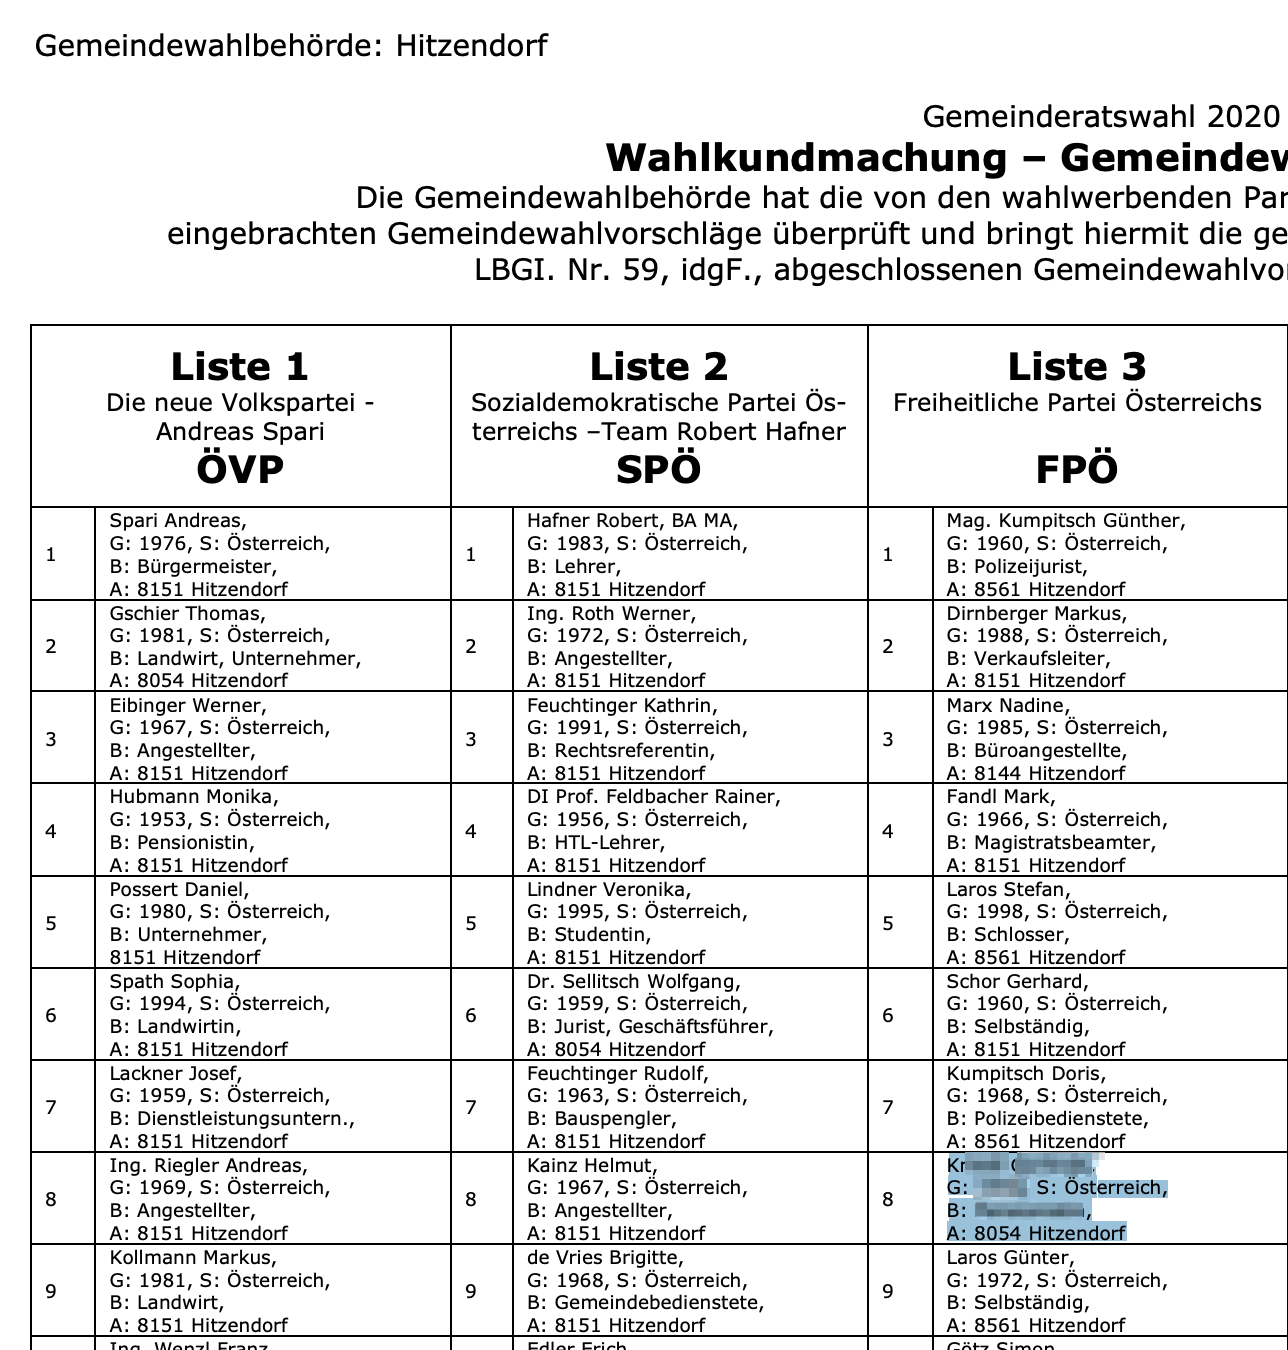 K. FPÖ-Kandidatin für den Gemeinderat auf Platz 8